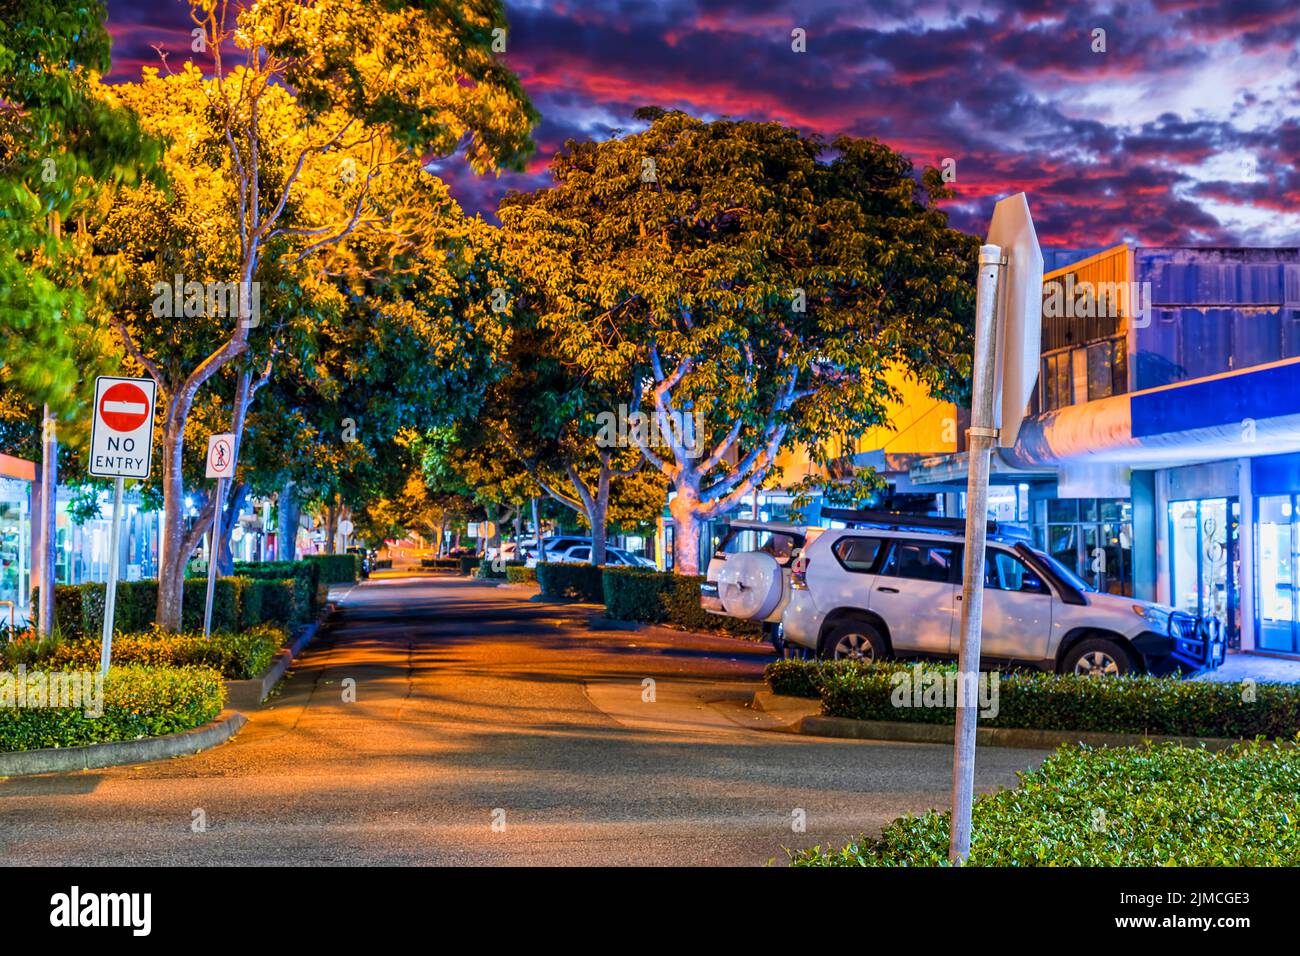 Principal calle comercial en la ciudad de Forster en el centro de Australia al atardecer - popular destino turístico en la costa del Pacífico. Foto de stock